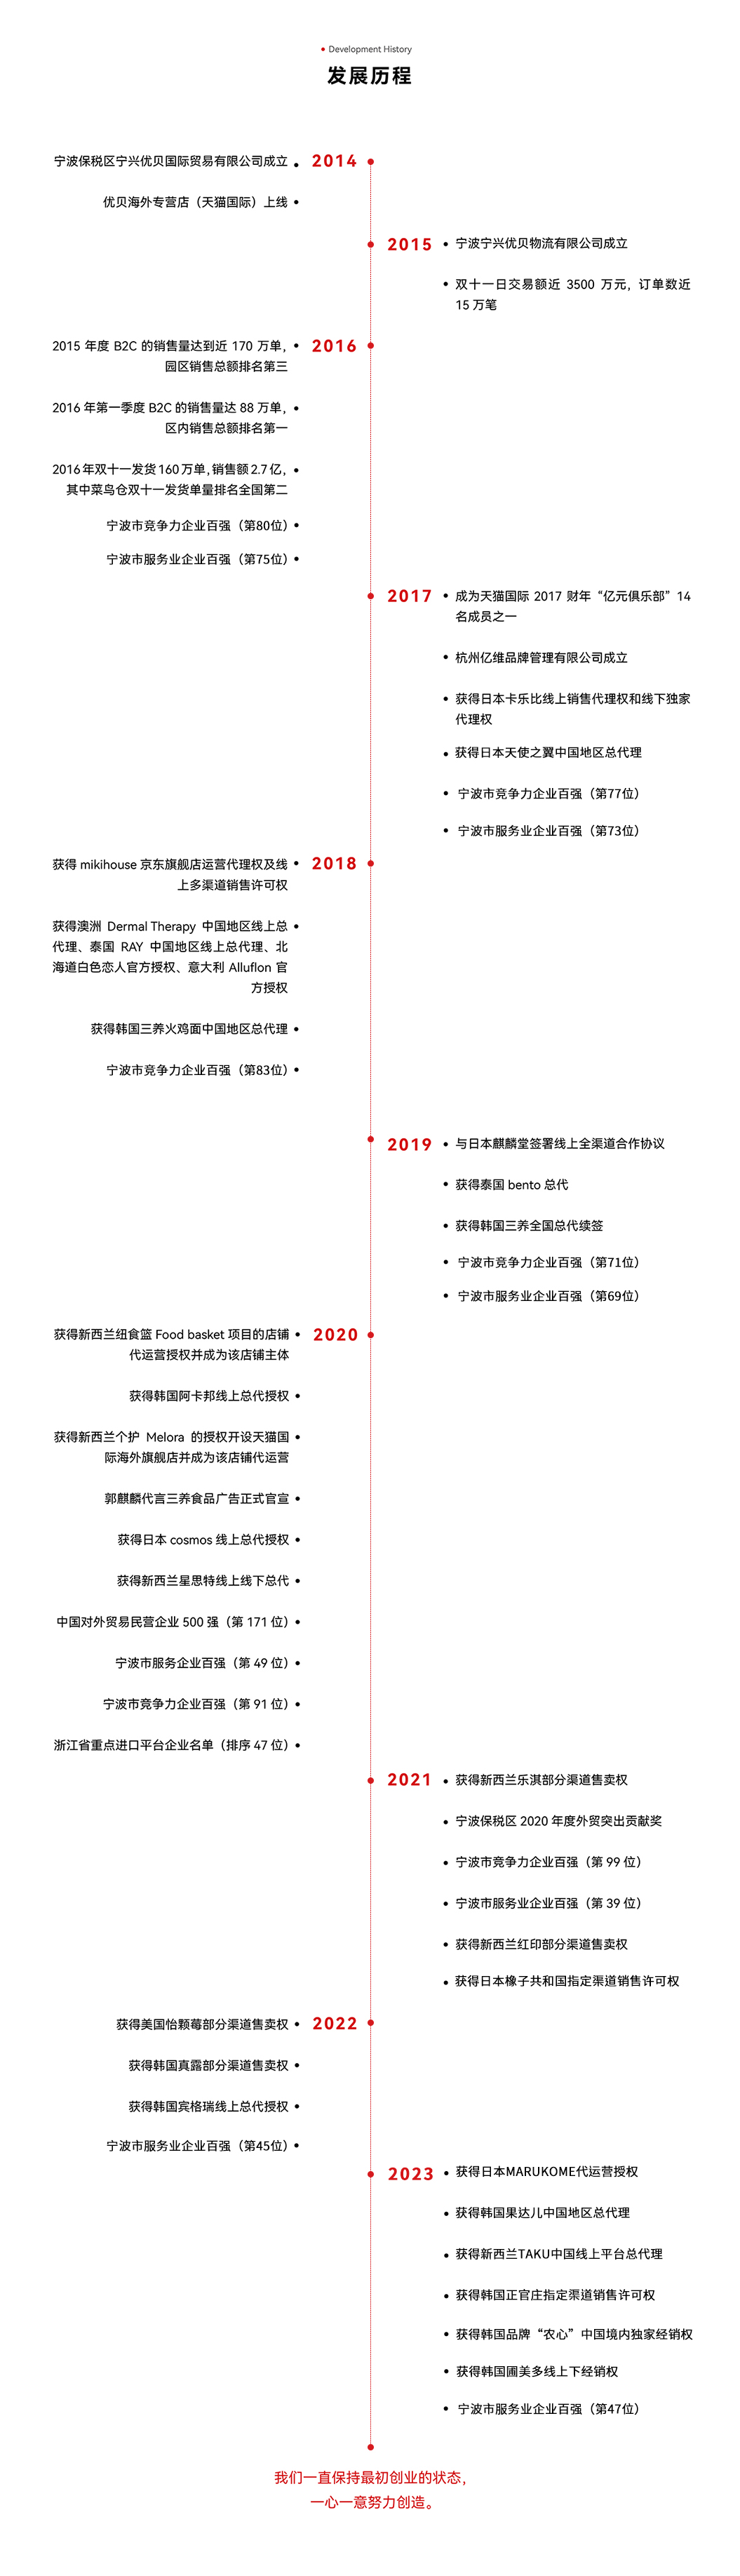 202312D27_优贝官网发展历程_中文.jpg